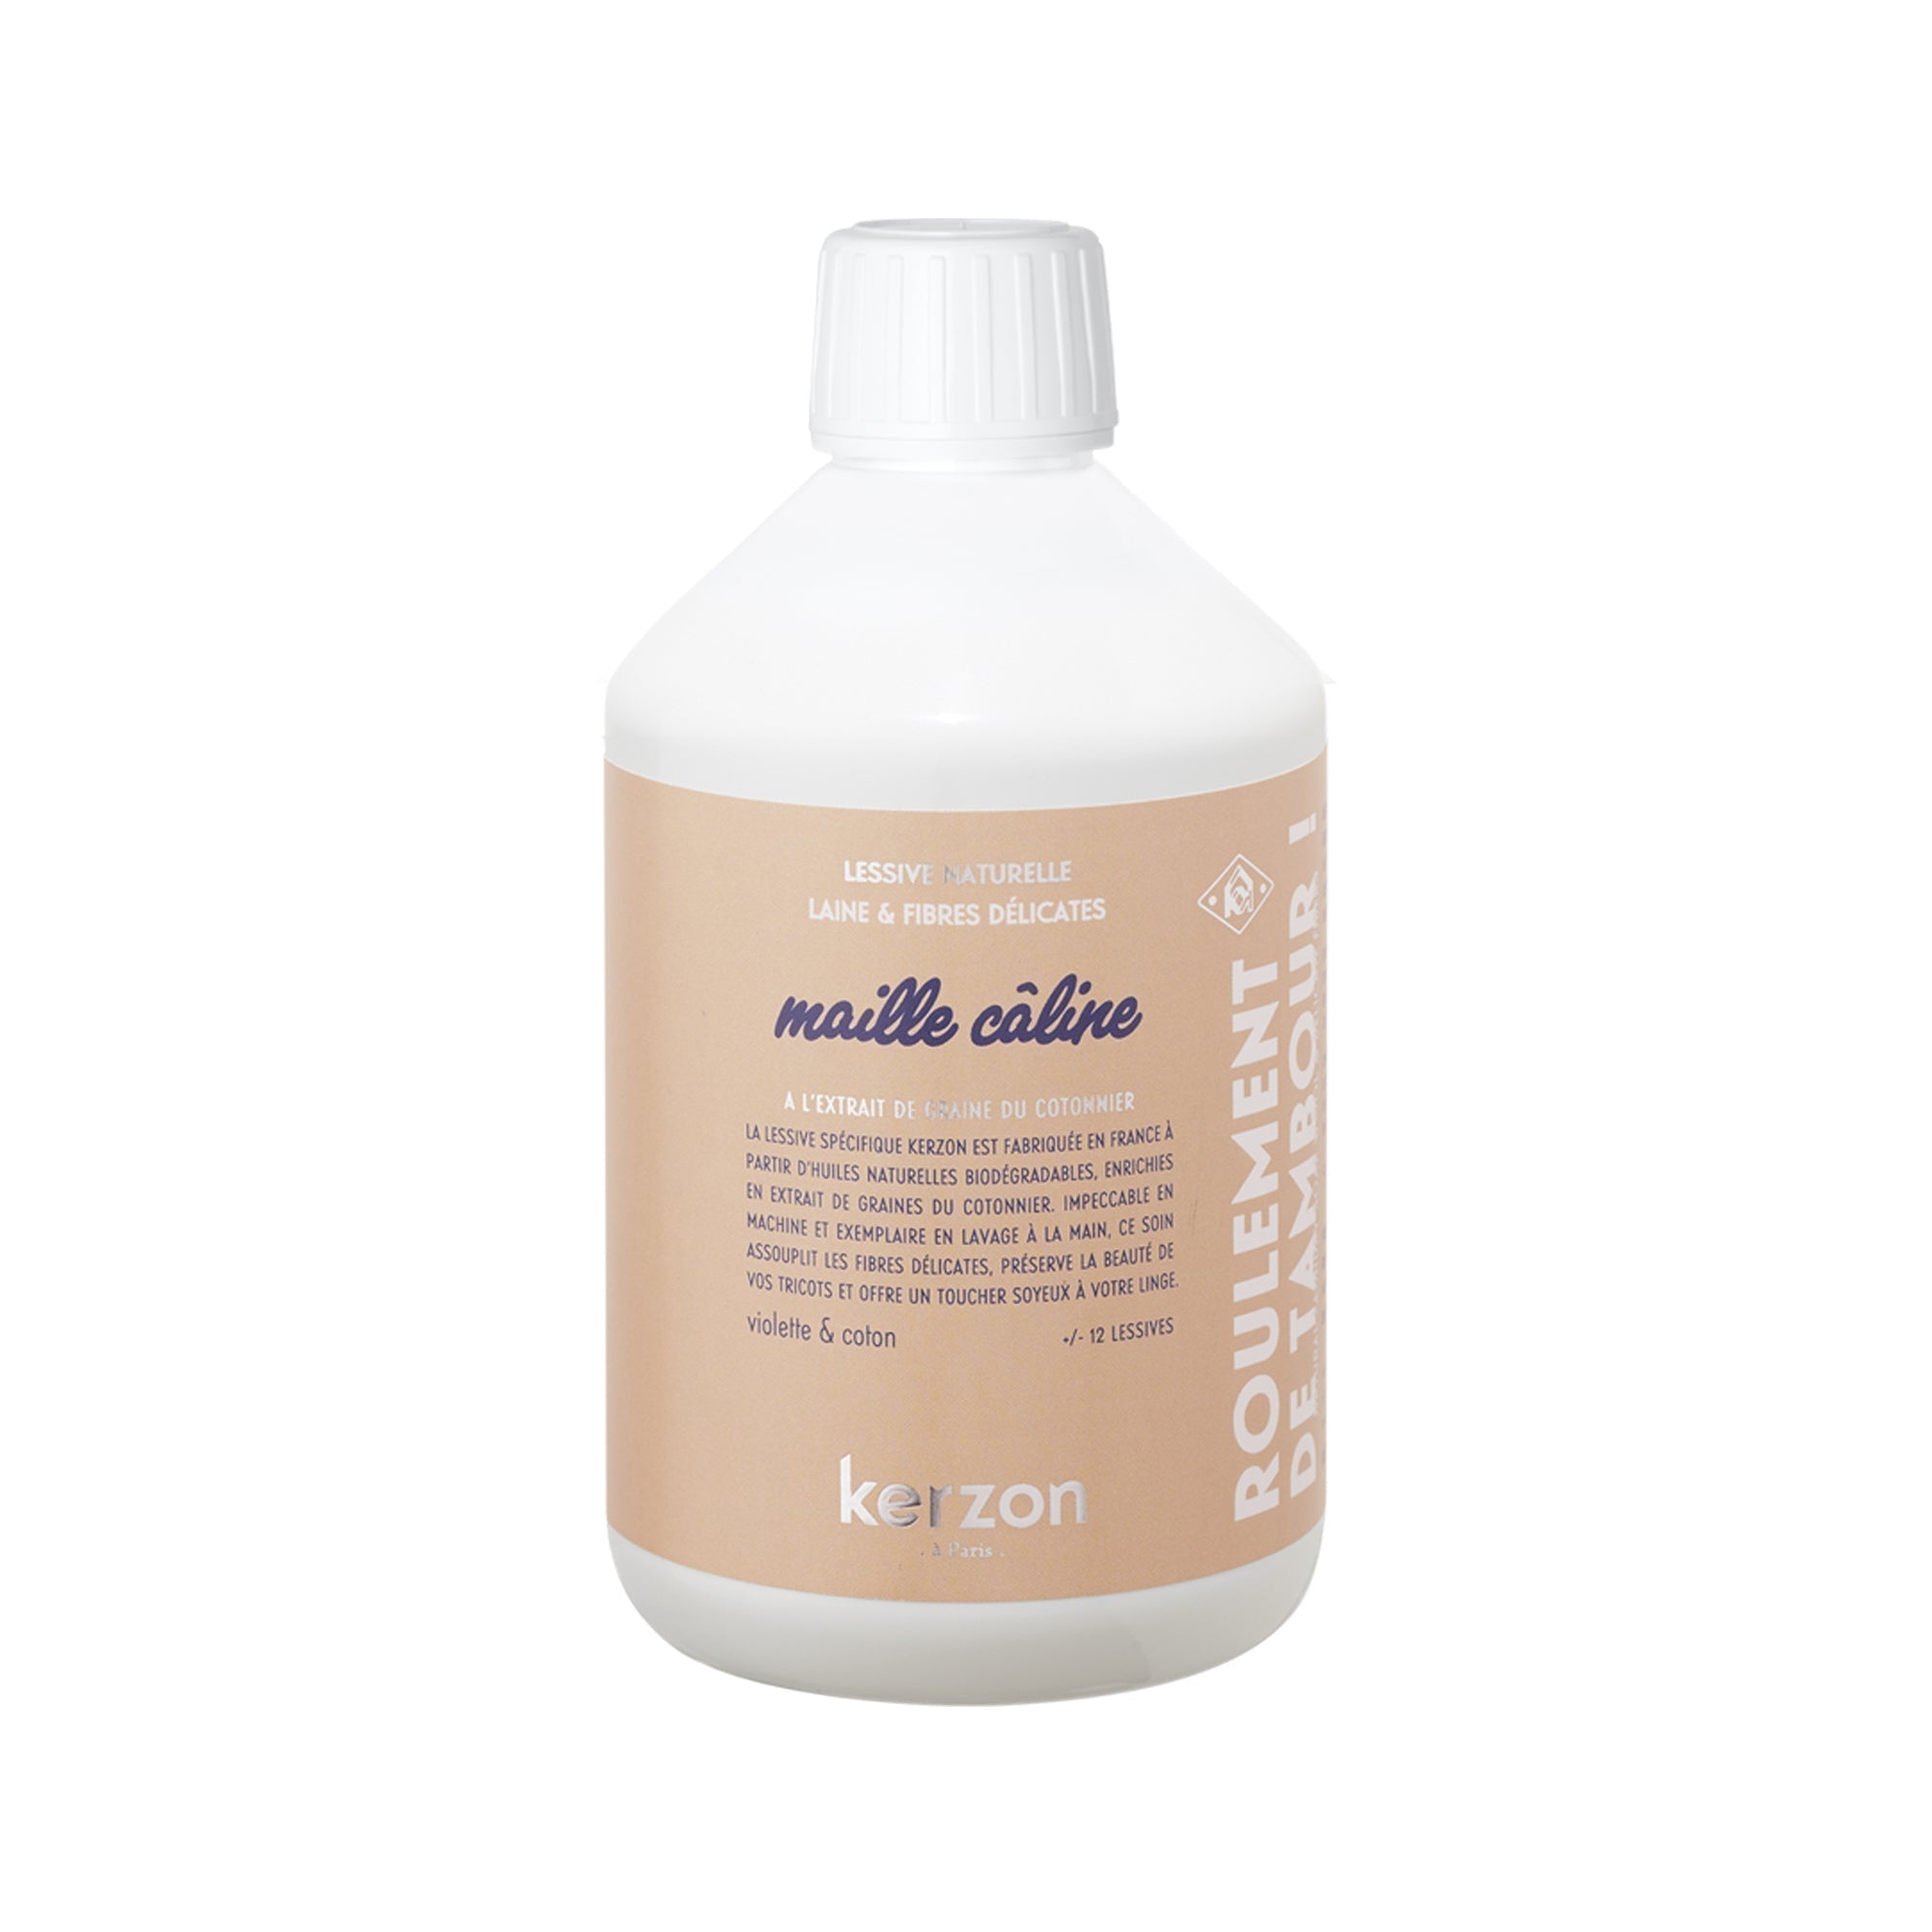 (Echantillon) Lessive naturelle Maille Caline (Sample) Maille Caline natural laundry detergent - Kerzon